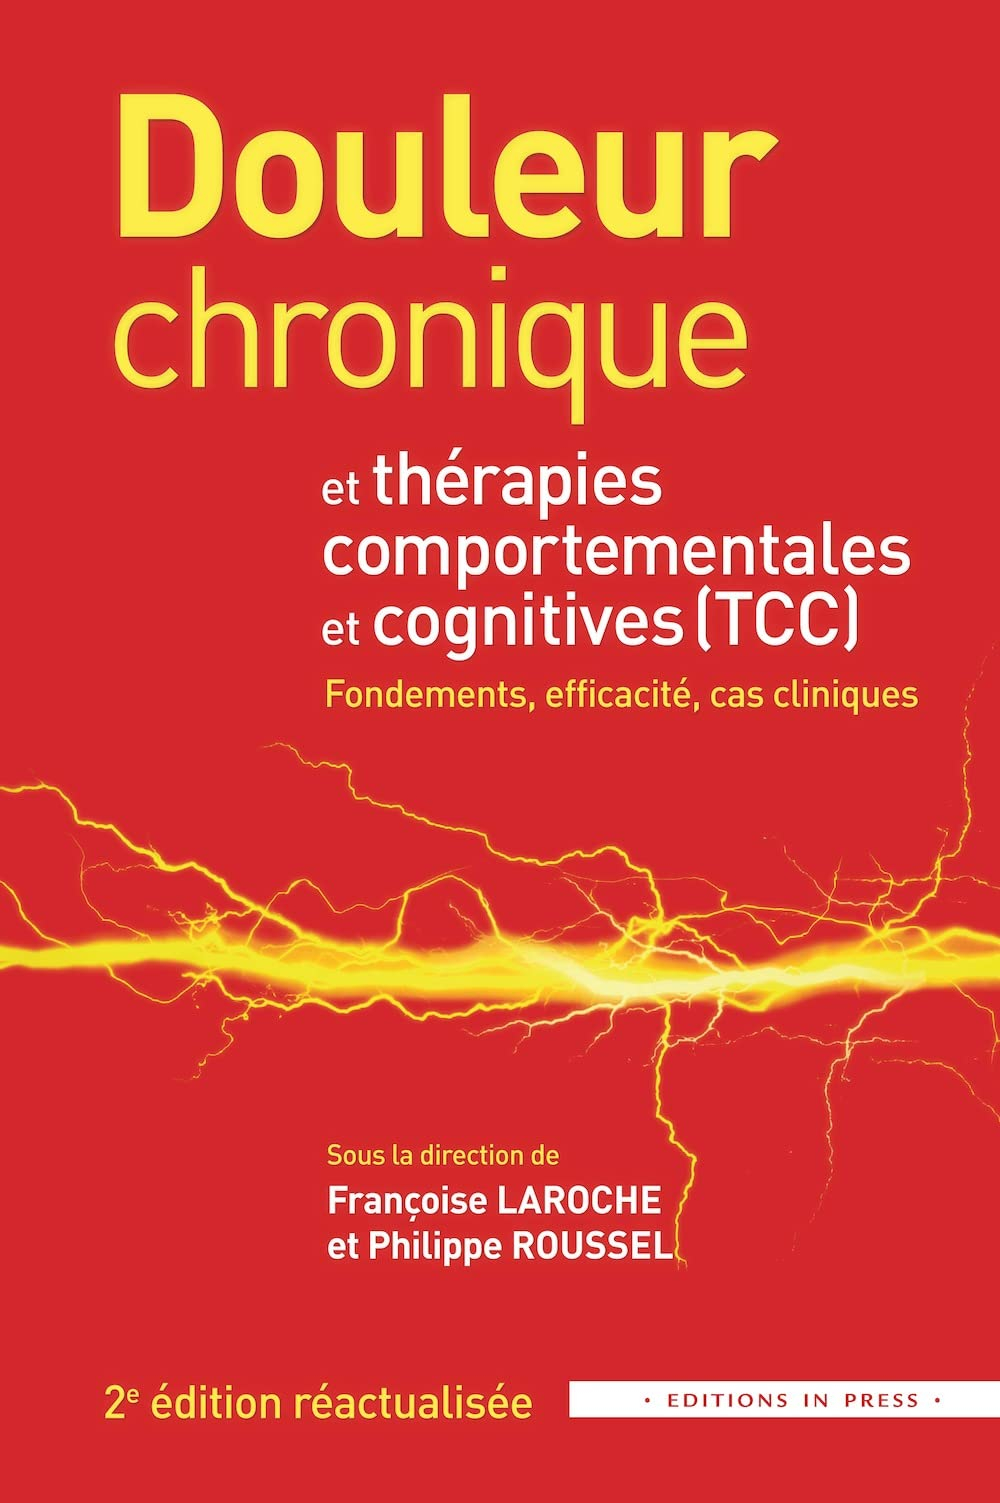 Douleur chronique et thérapies comportementales et cognitives (TCC) : fondements, efficacité, cas cl